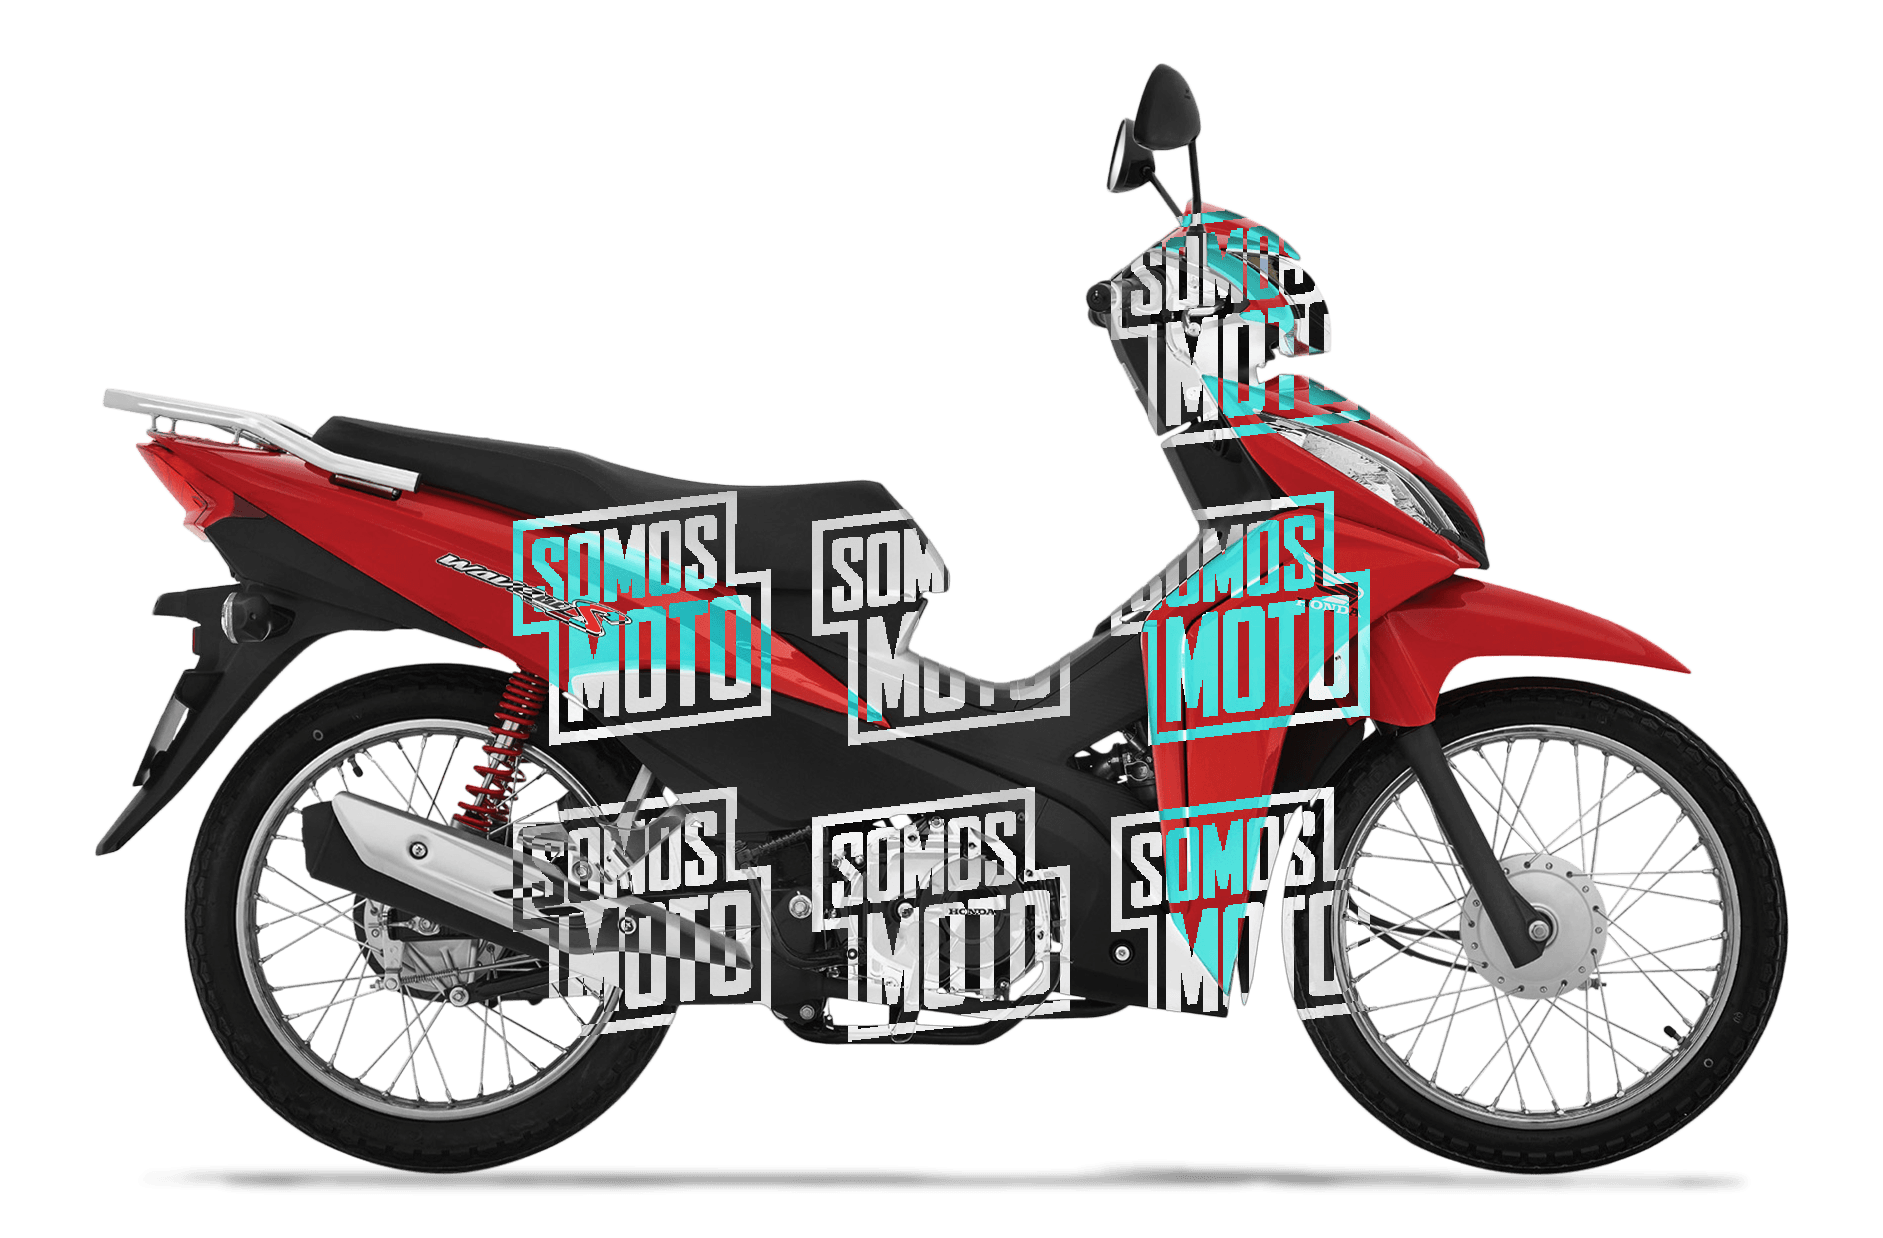 Honda Wave 110s 2018 Precio 1550 Motos Honda Somos Moto Perú 3913